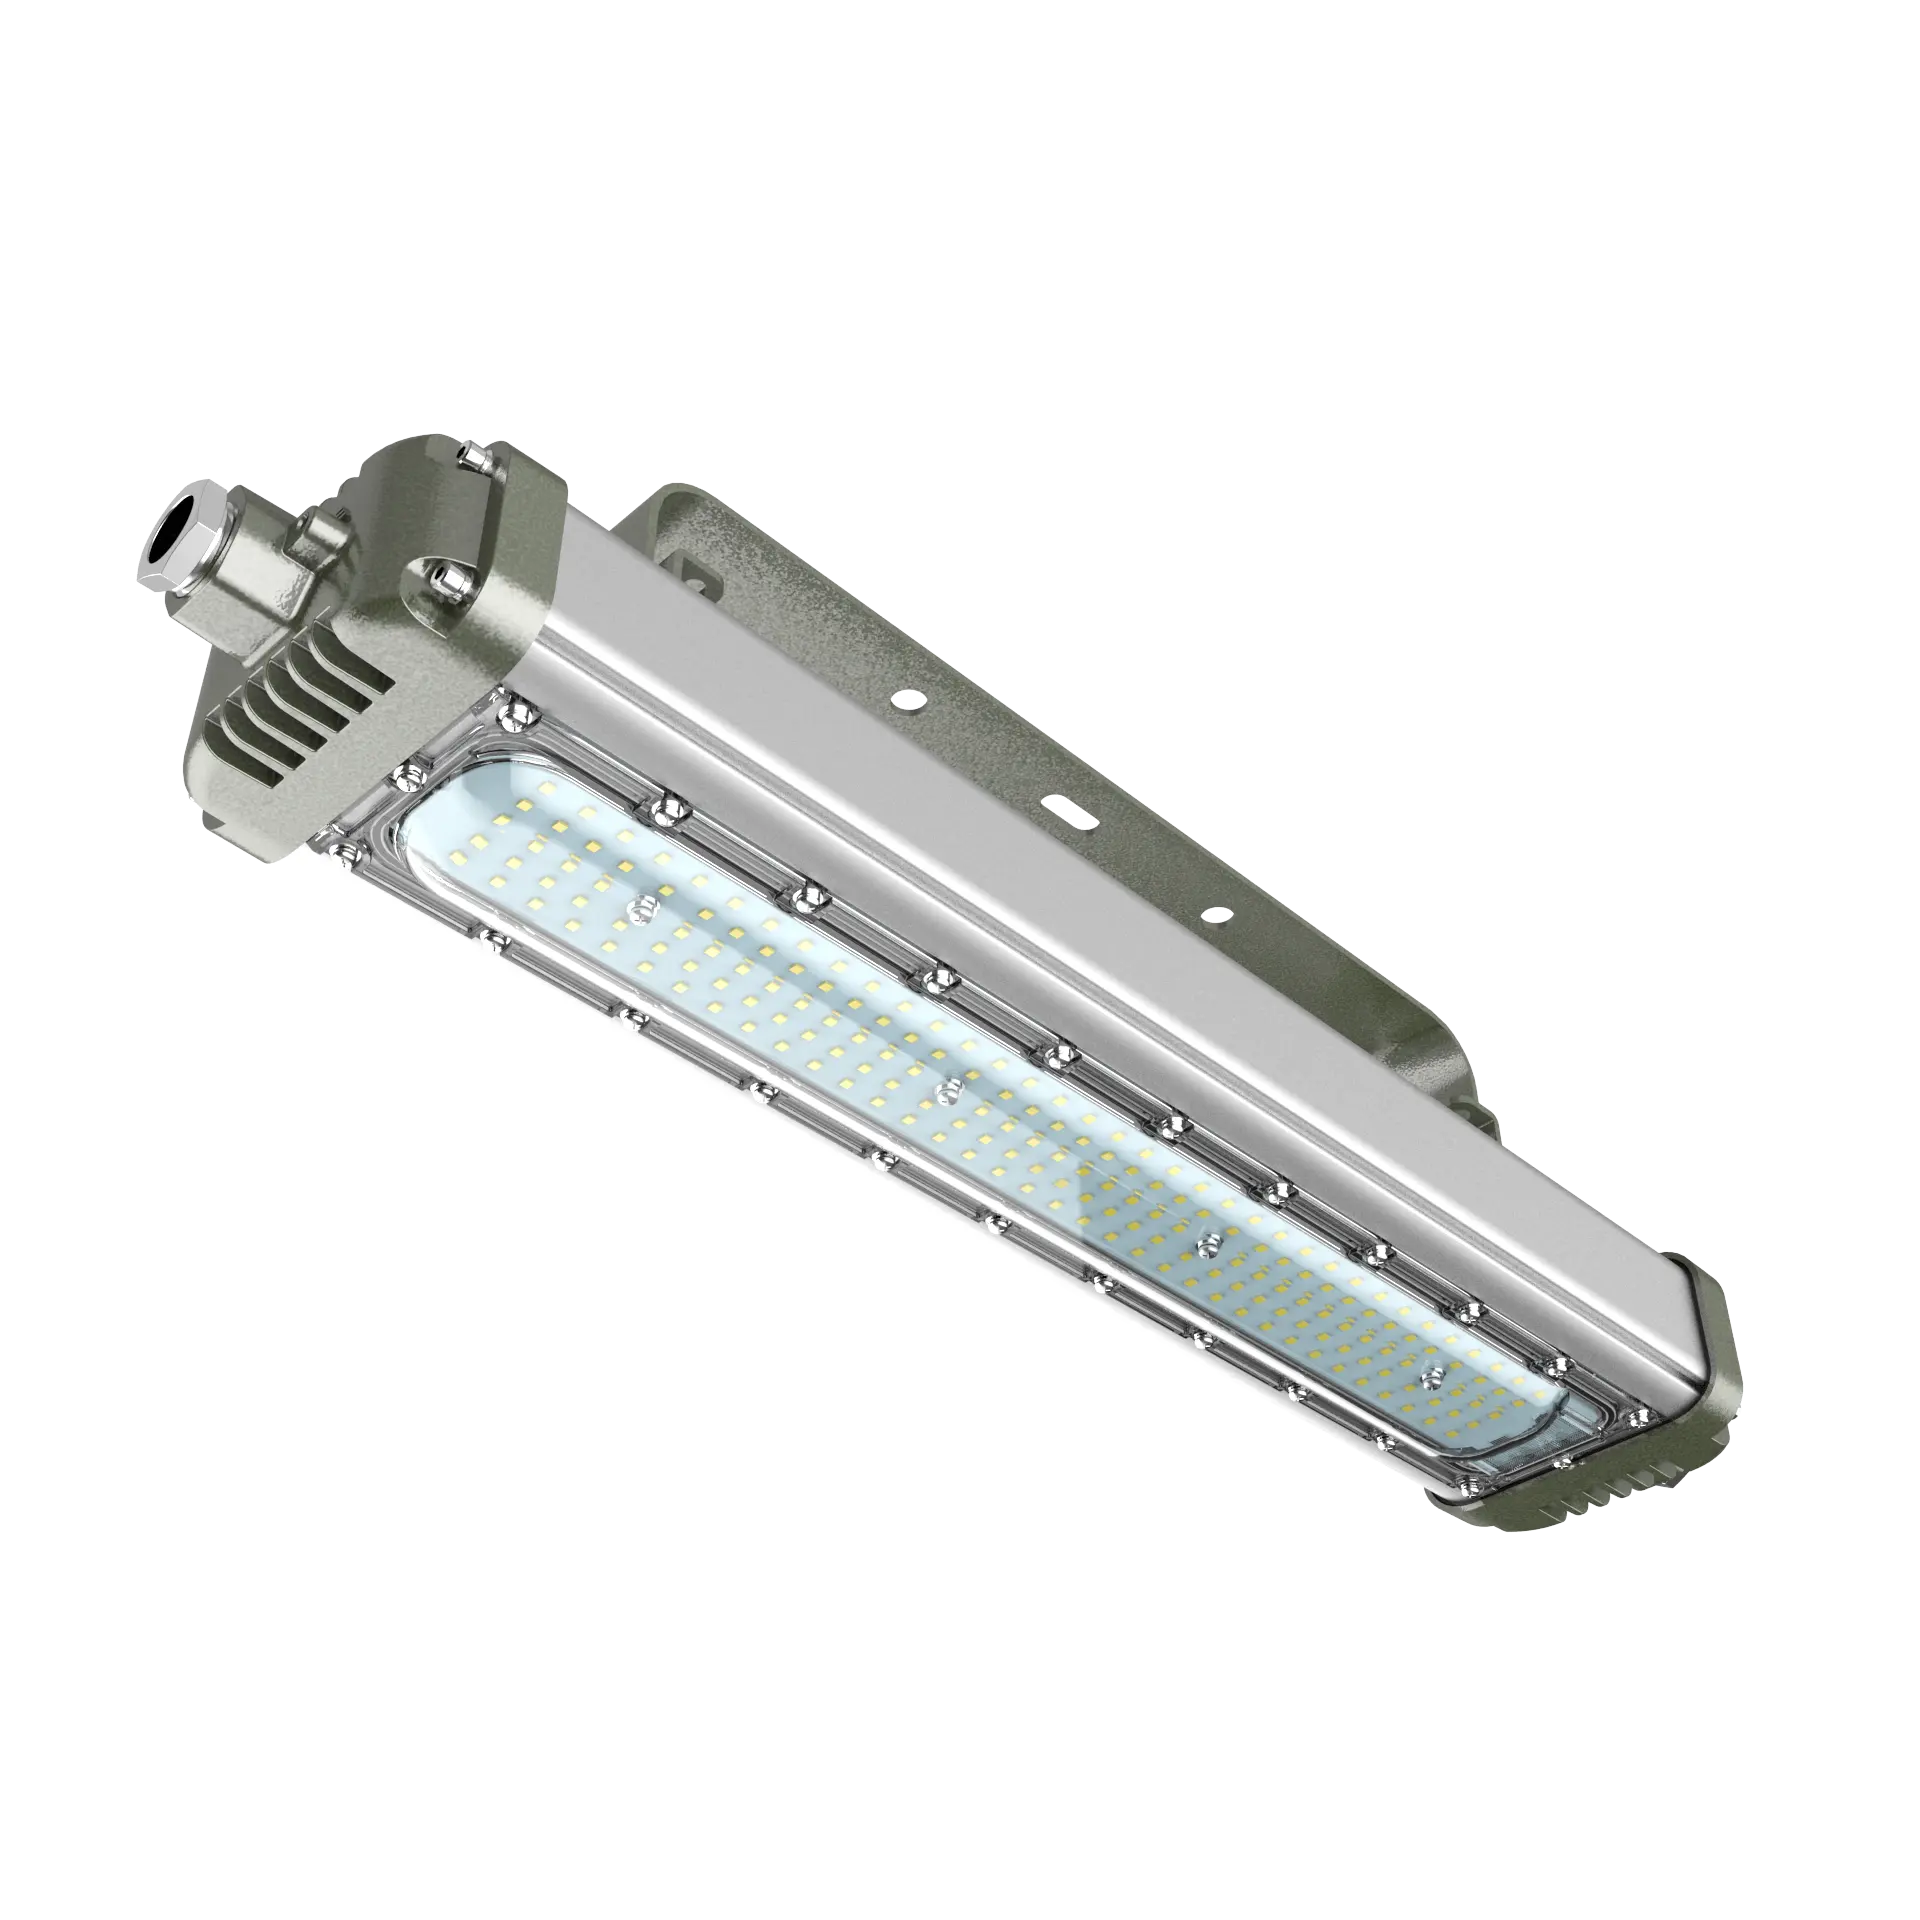 Yüksek kaliteli patlama korumalı lamba ATEX LED endüstriyel patlamaya dayanıklı lineer acil durum fonksiyonu ile